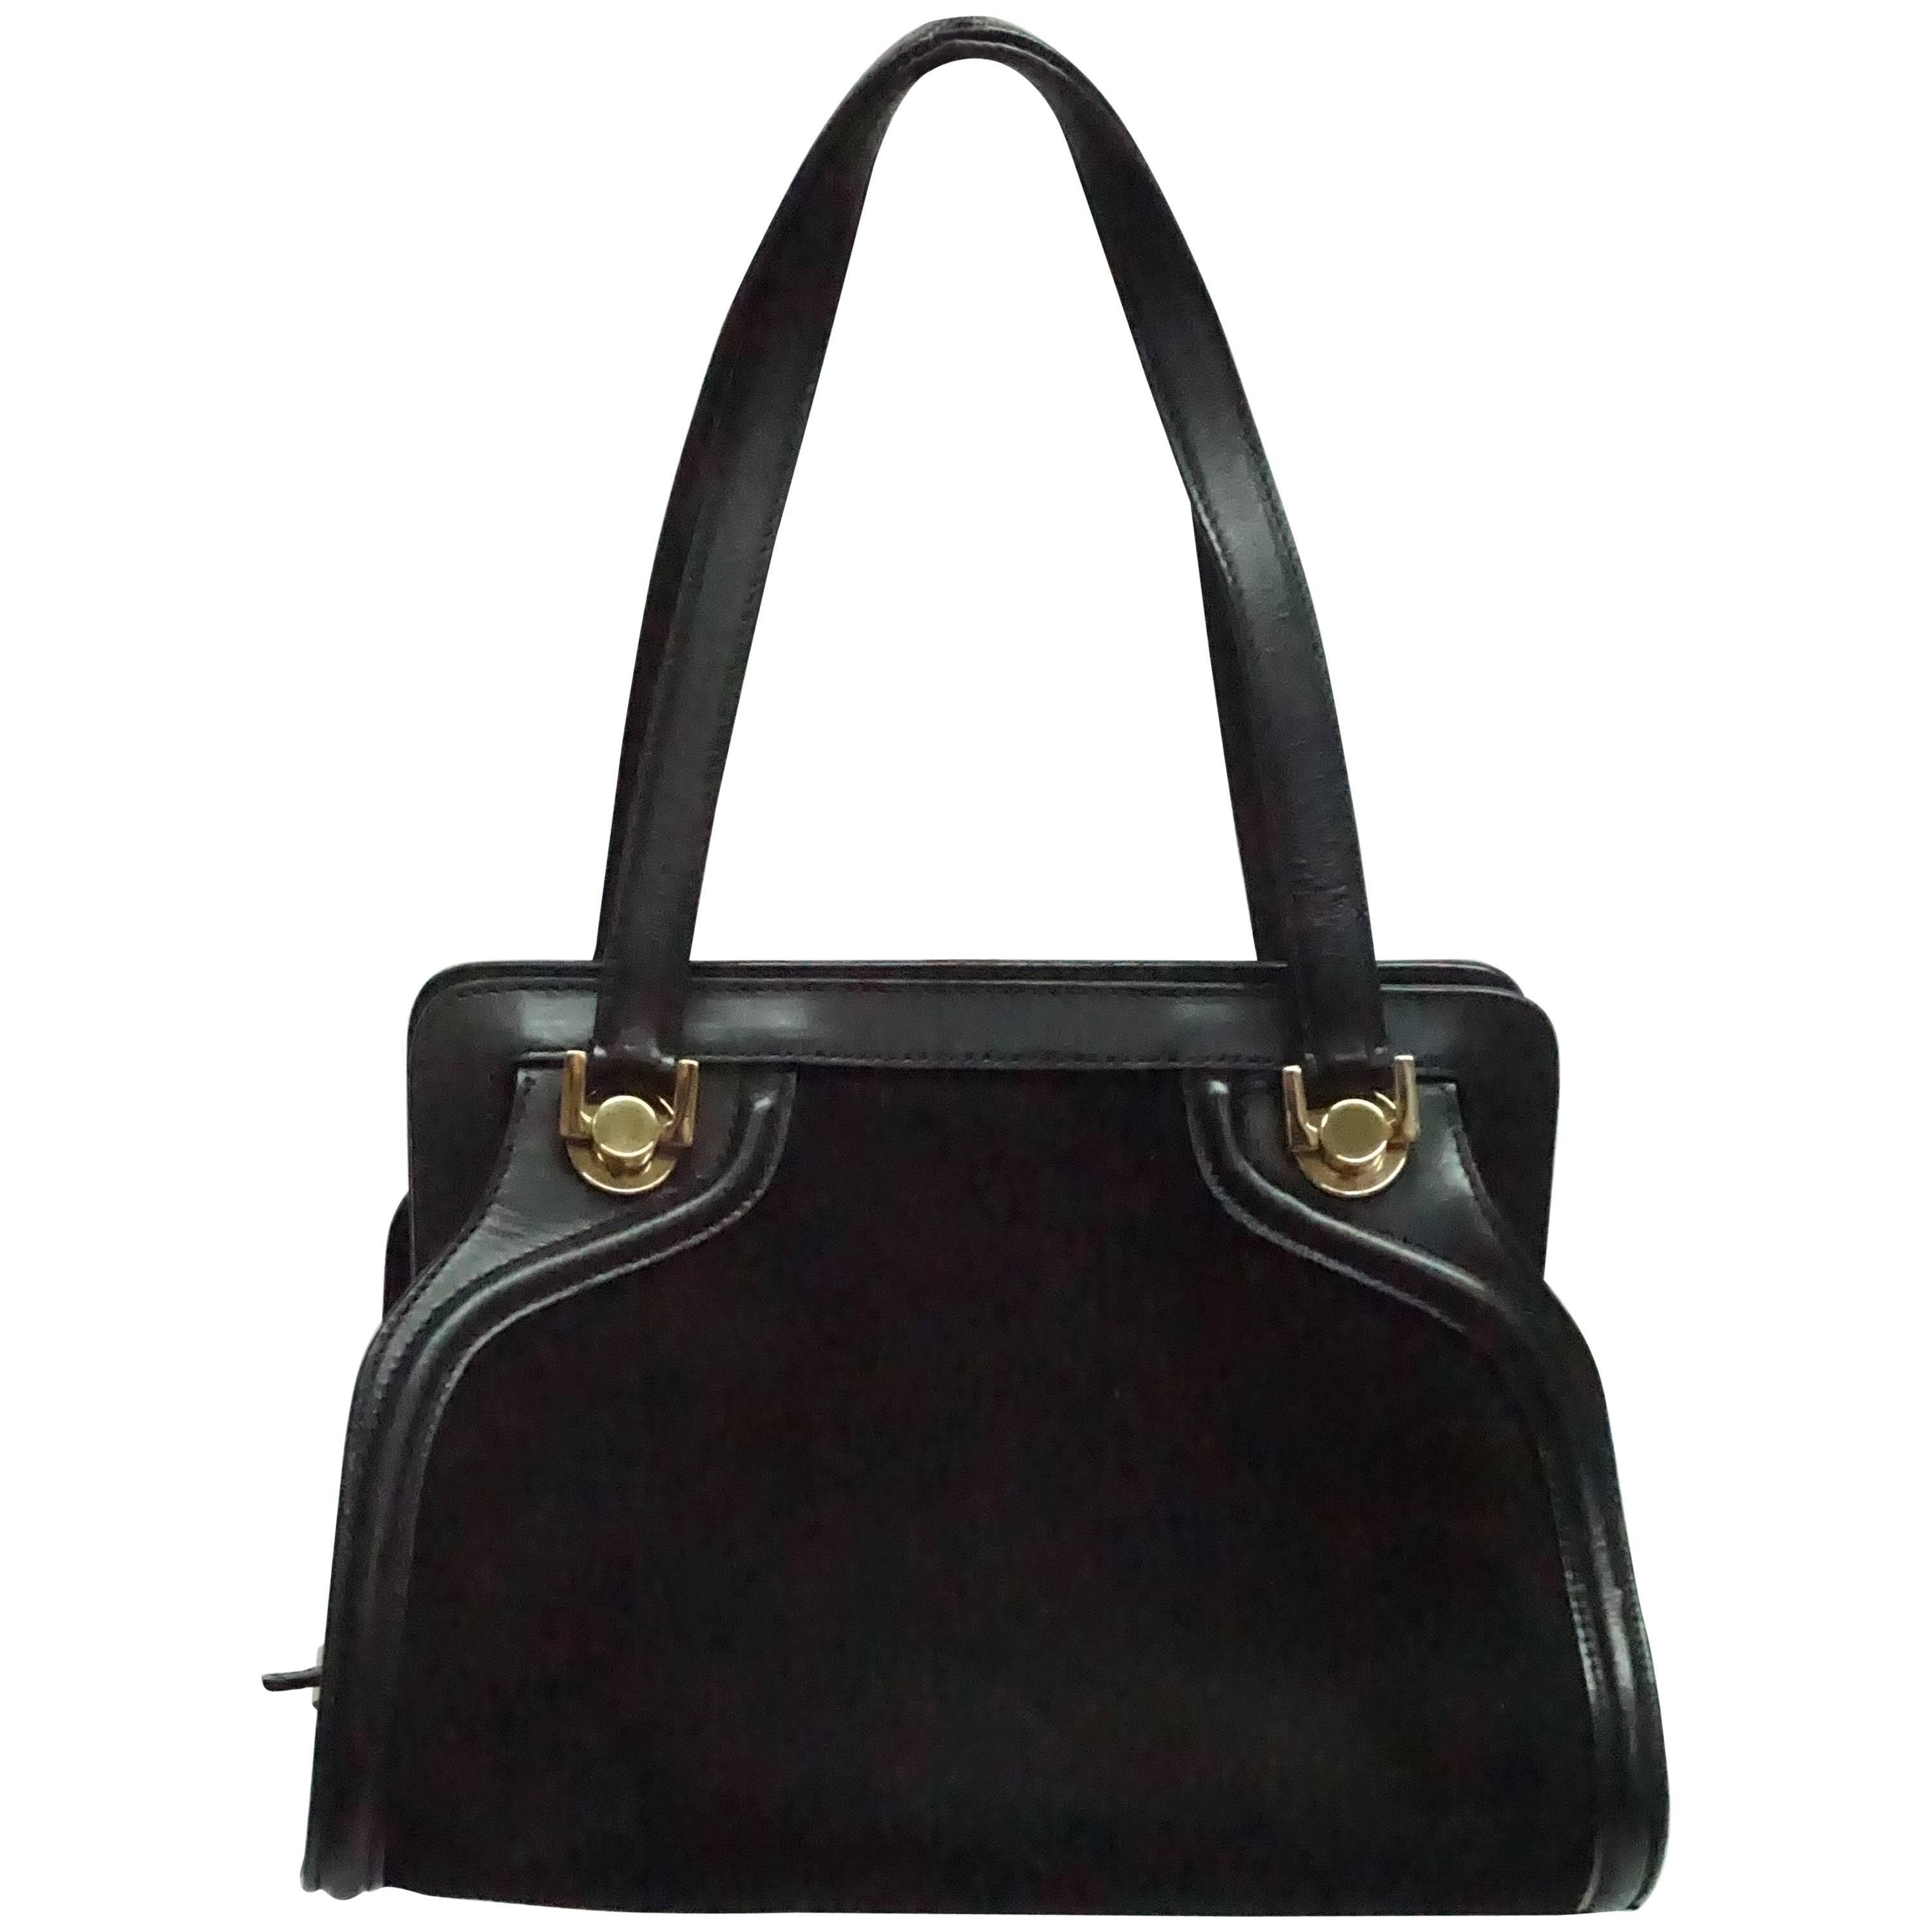 Salvatore Ferragamo Black Suede and Leather Top Handle Handbag at ...